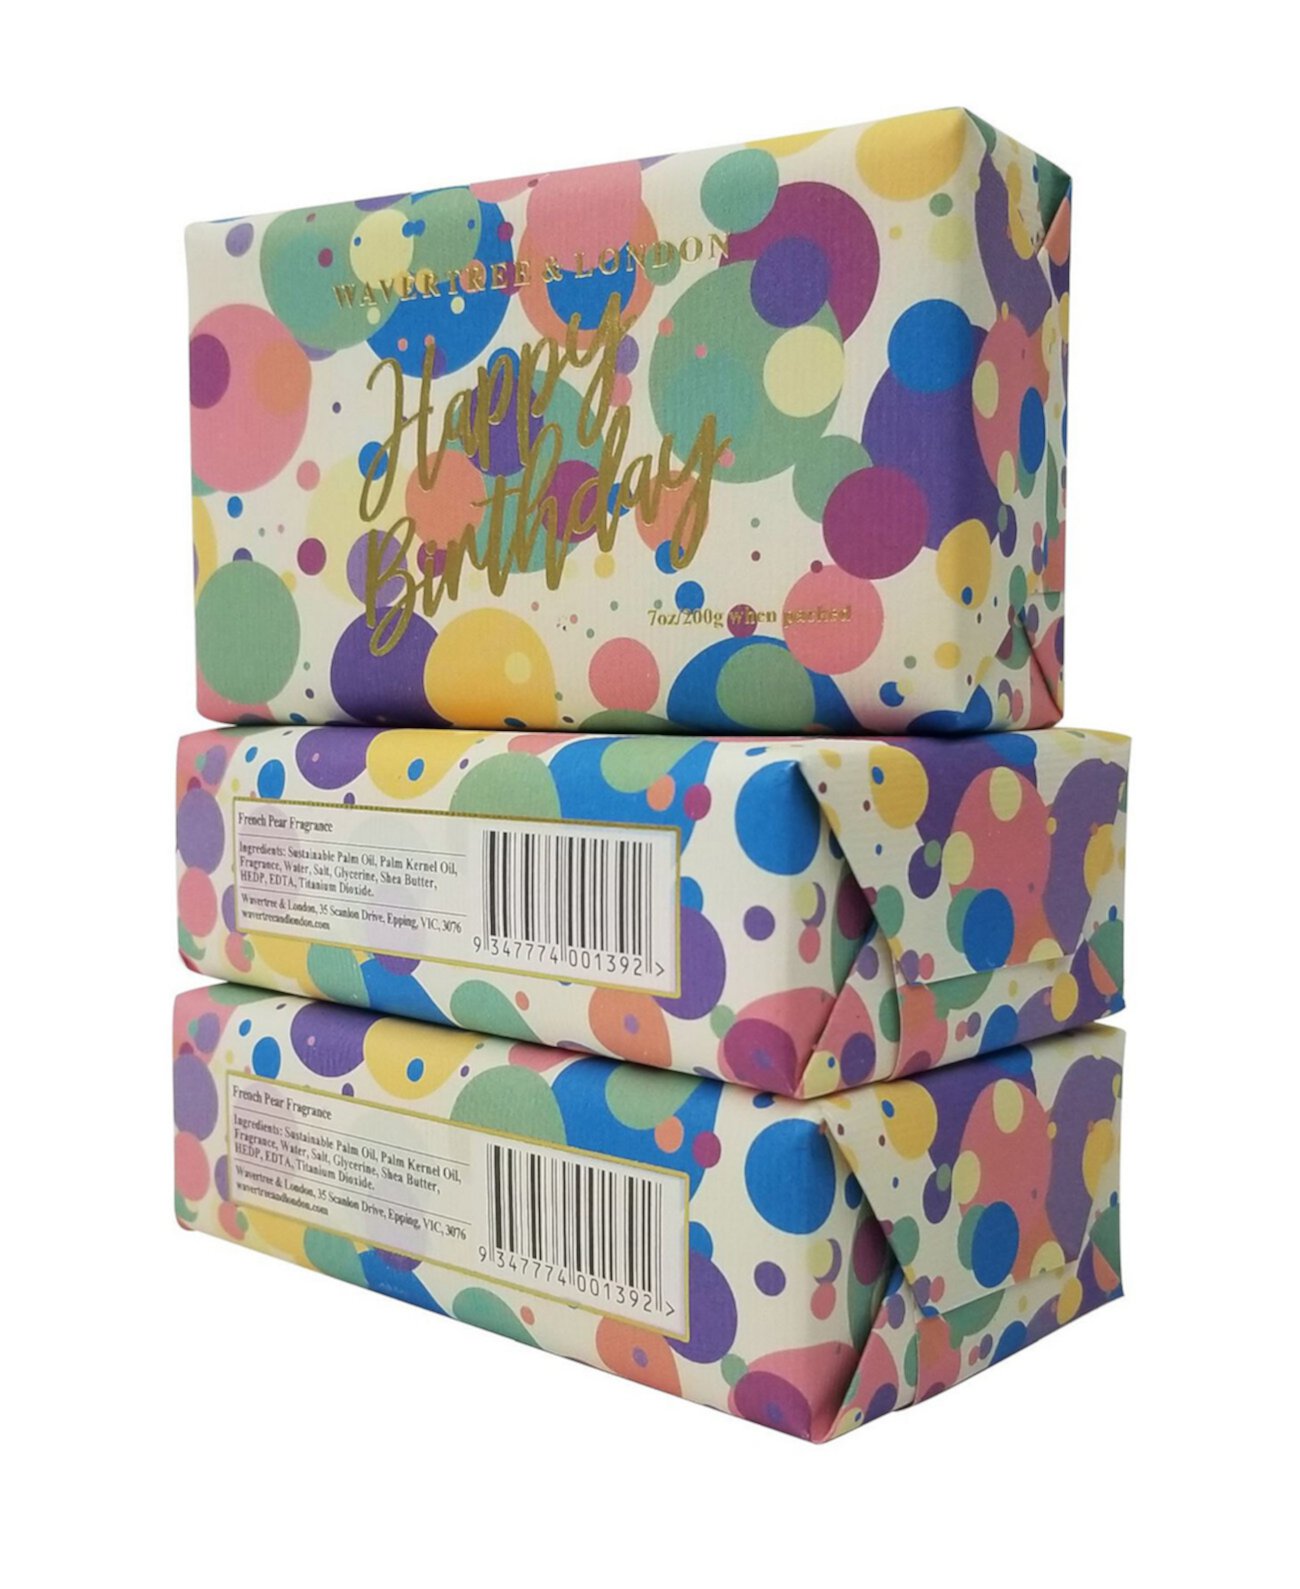 С Днем Рождения - Конфетти - Кусковое мыло по 3 упаковки по 7 унций каждая Wavertree & London